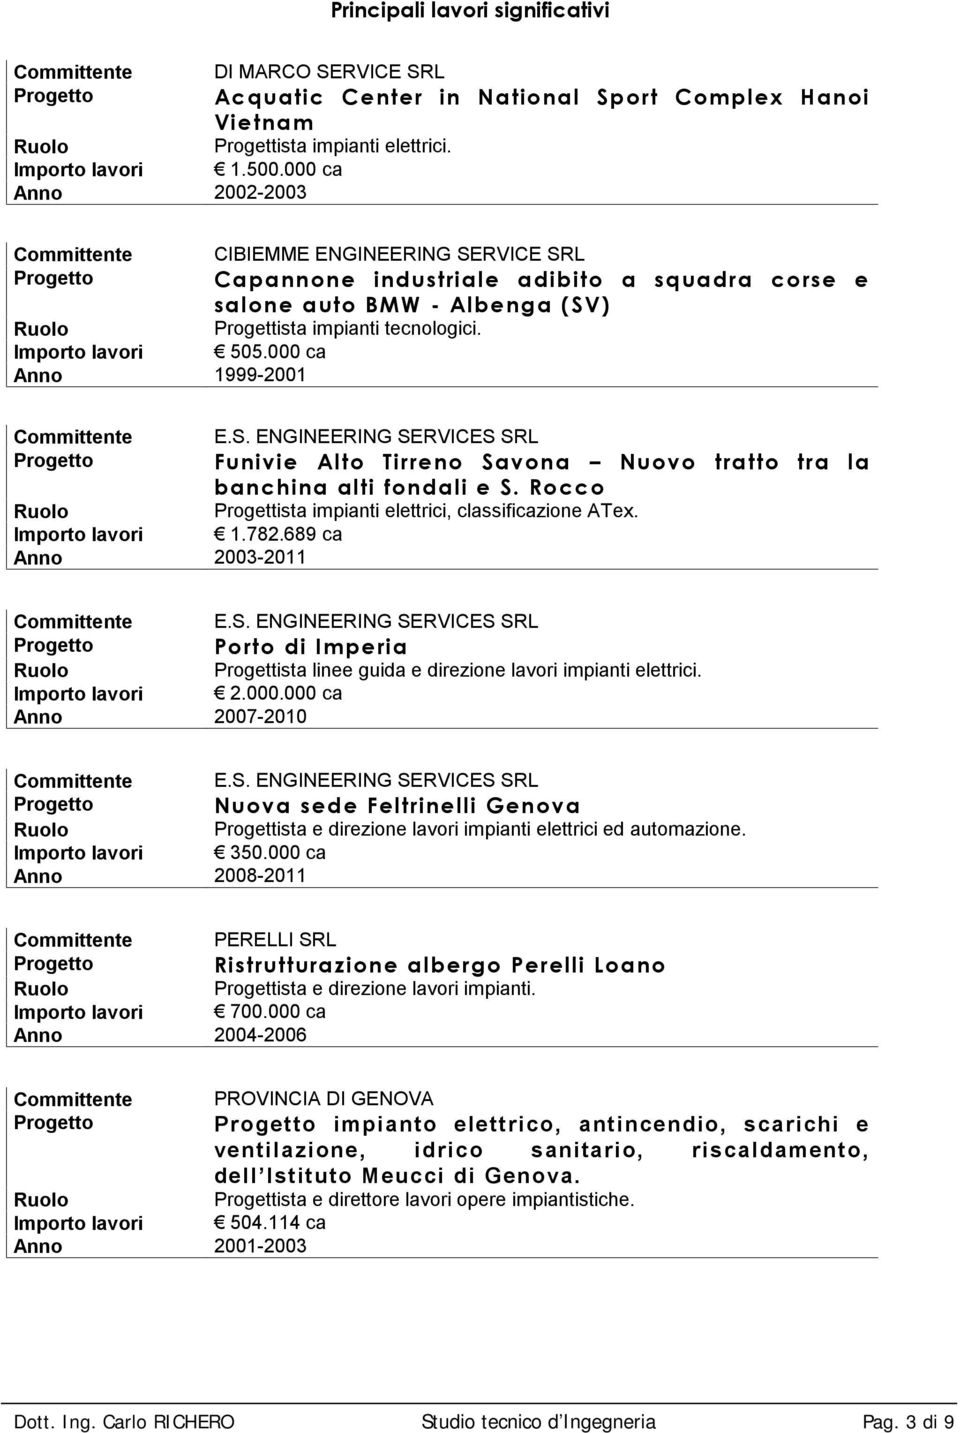 Rocco Progettista impianti elettrici, classificazione ATex. 1.782.689 ca 2003-2011 E.S. ENGINEERING SERVICES SRL Porto di Imperia Progettista linee guida e direzione lavori impianti elettrici. 2.000.